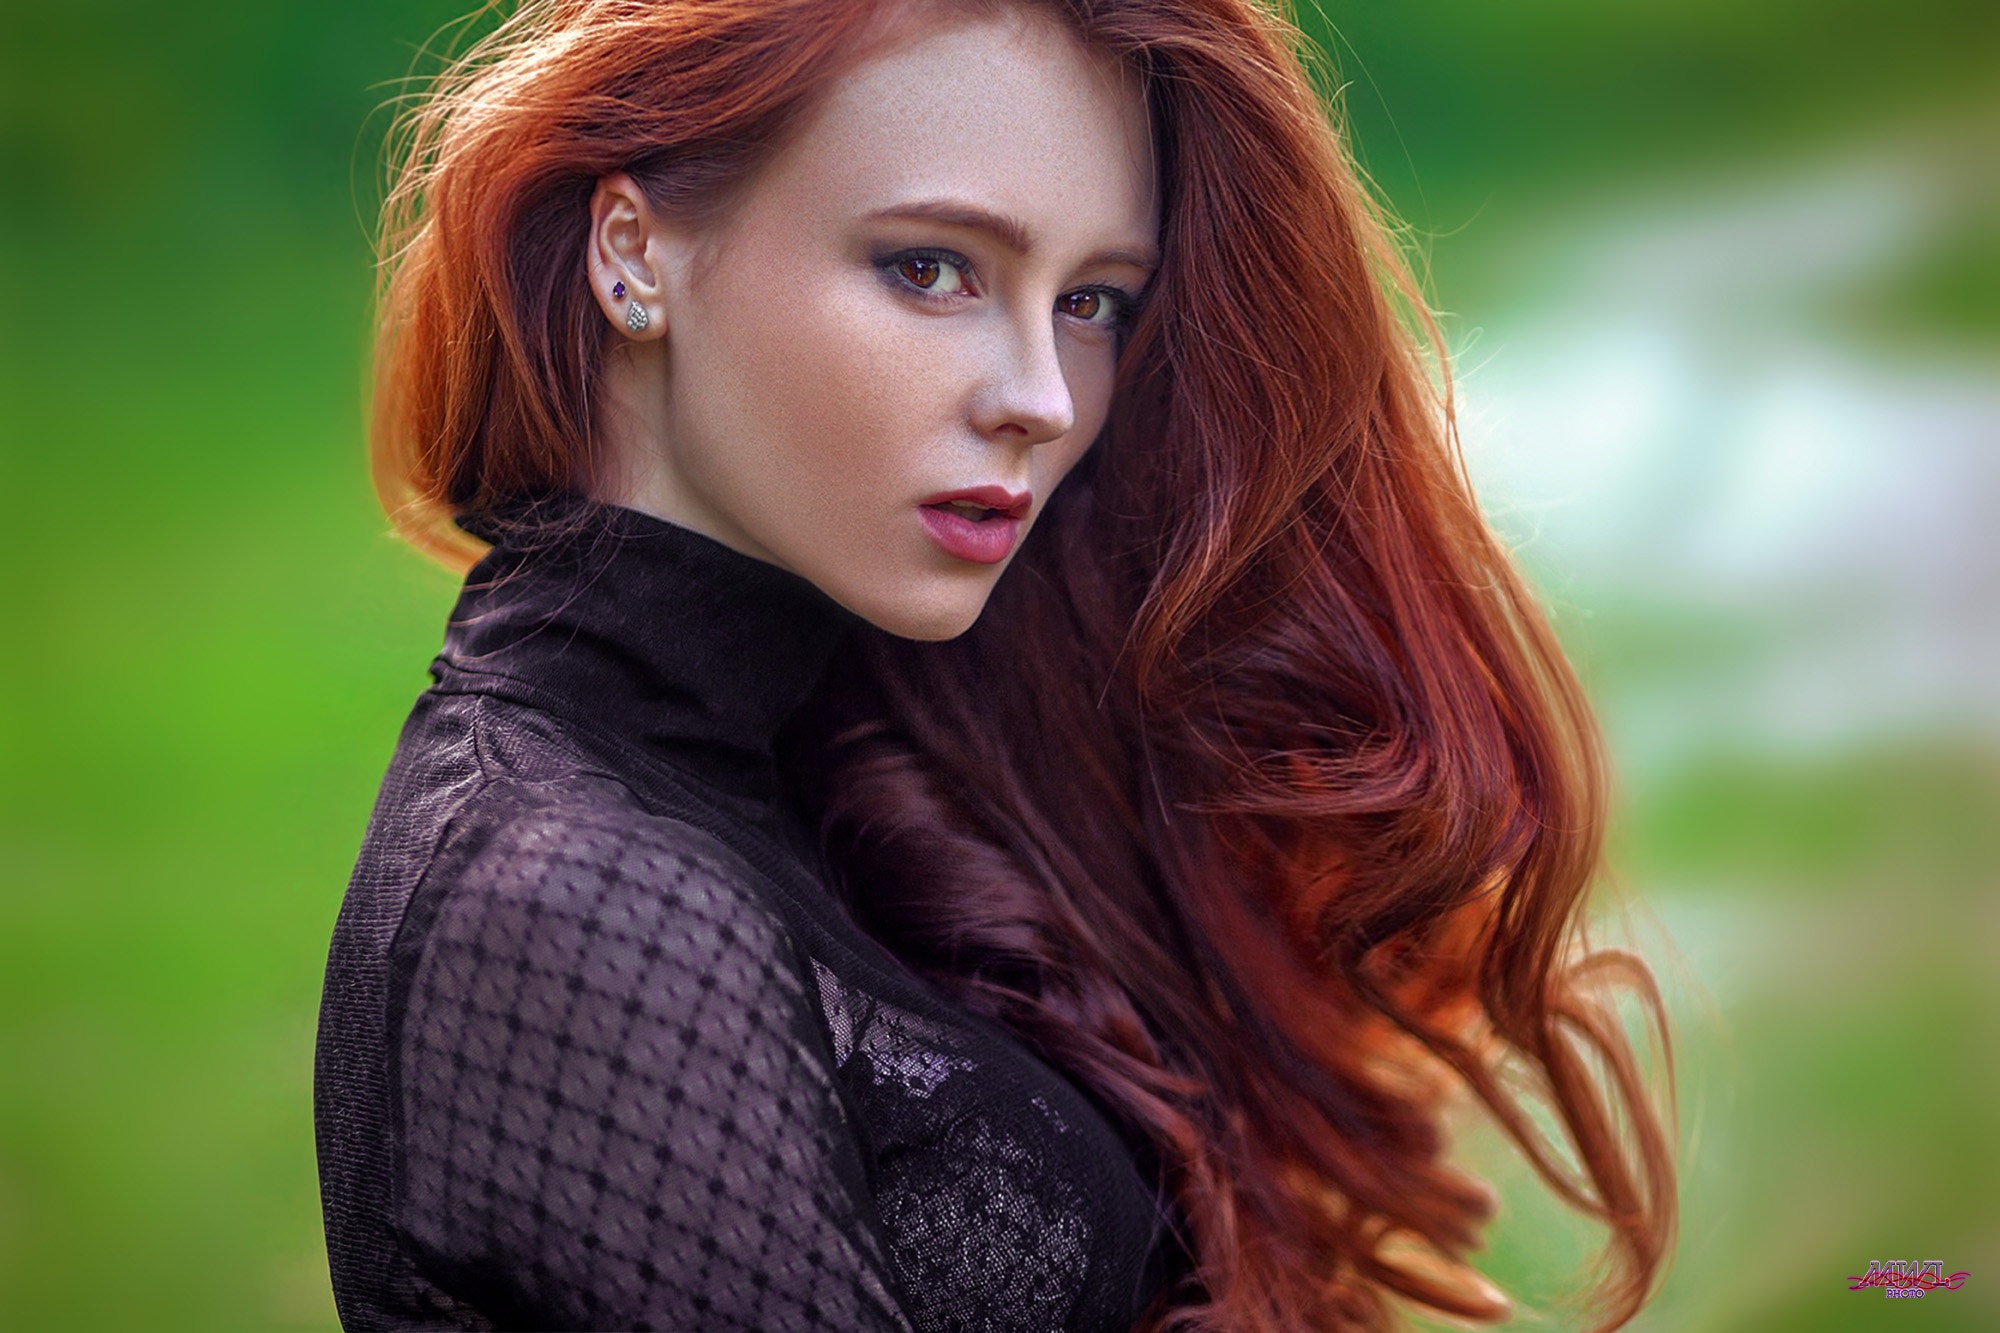 Redhead Long Hair Brown Eyes Women MWL Photo Alexandra Girskaya 2000x1333